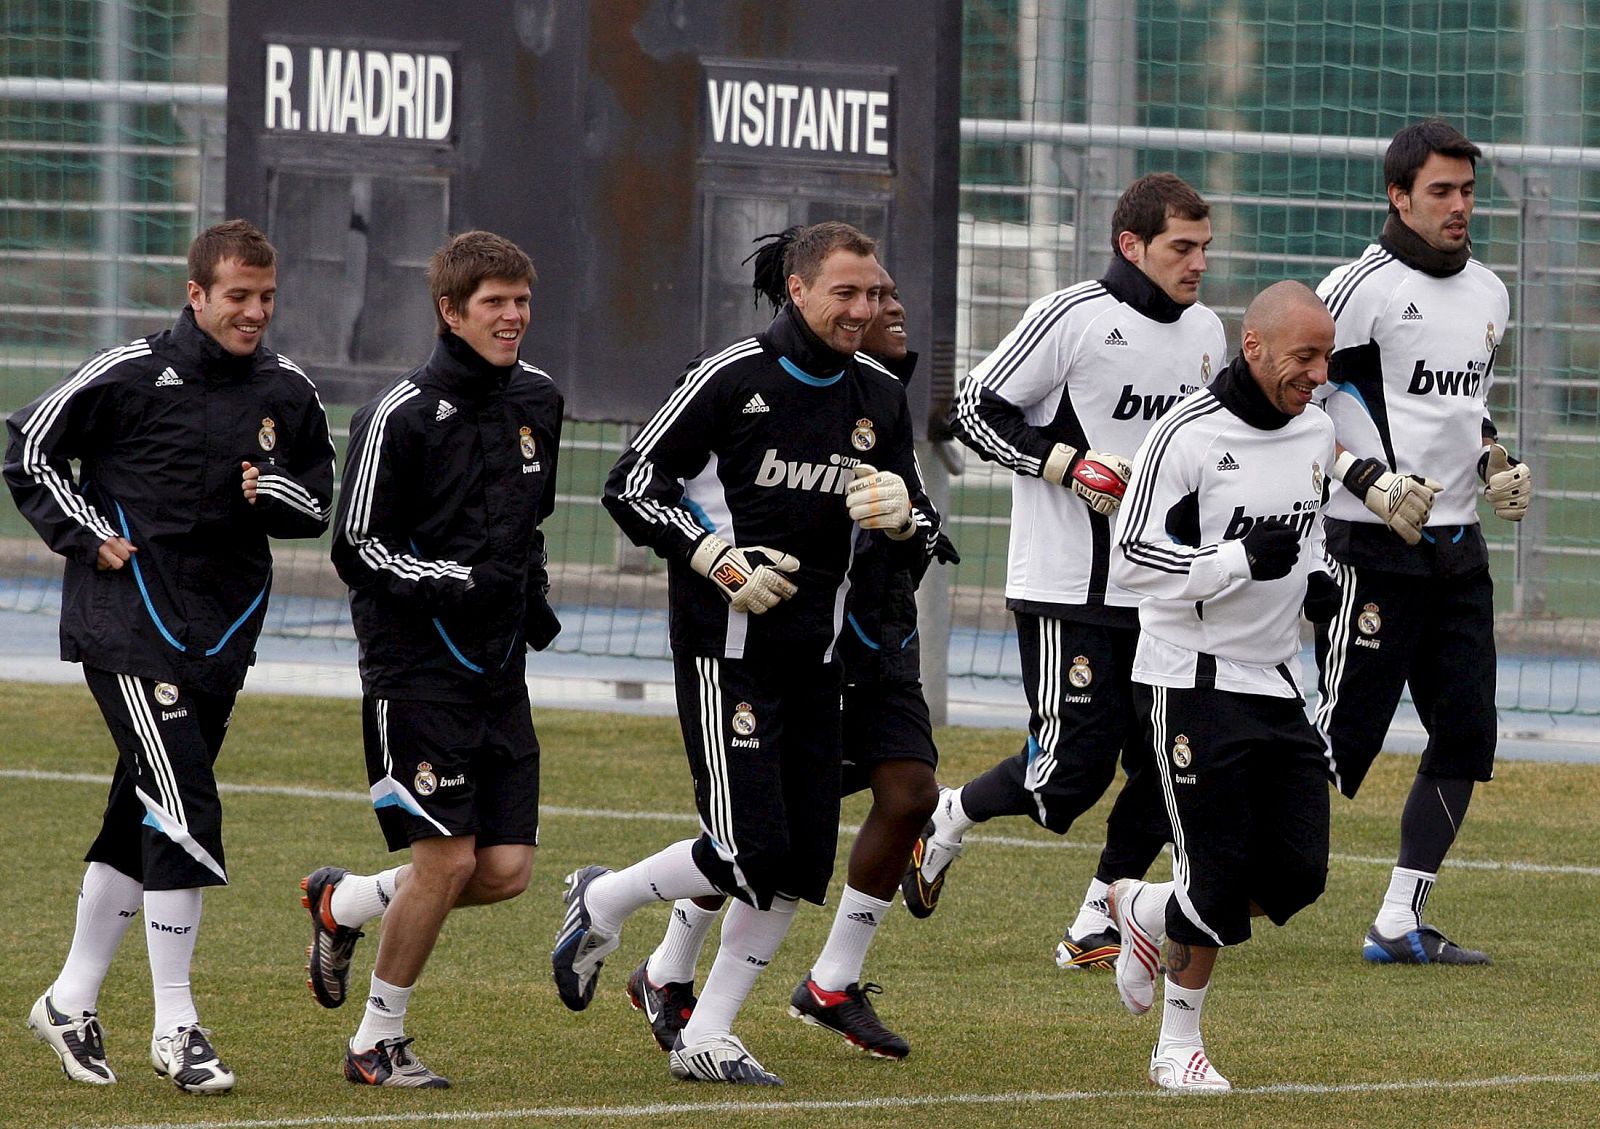 El nuevo delantero francés del Real Madrid, Julien Faubert, junto a sus compañeros, durante el entrenamiento de la plantilla.